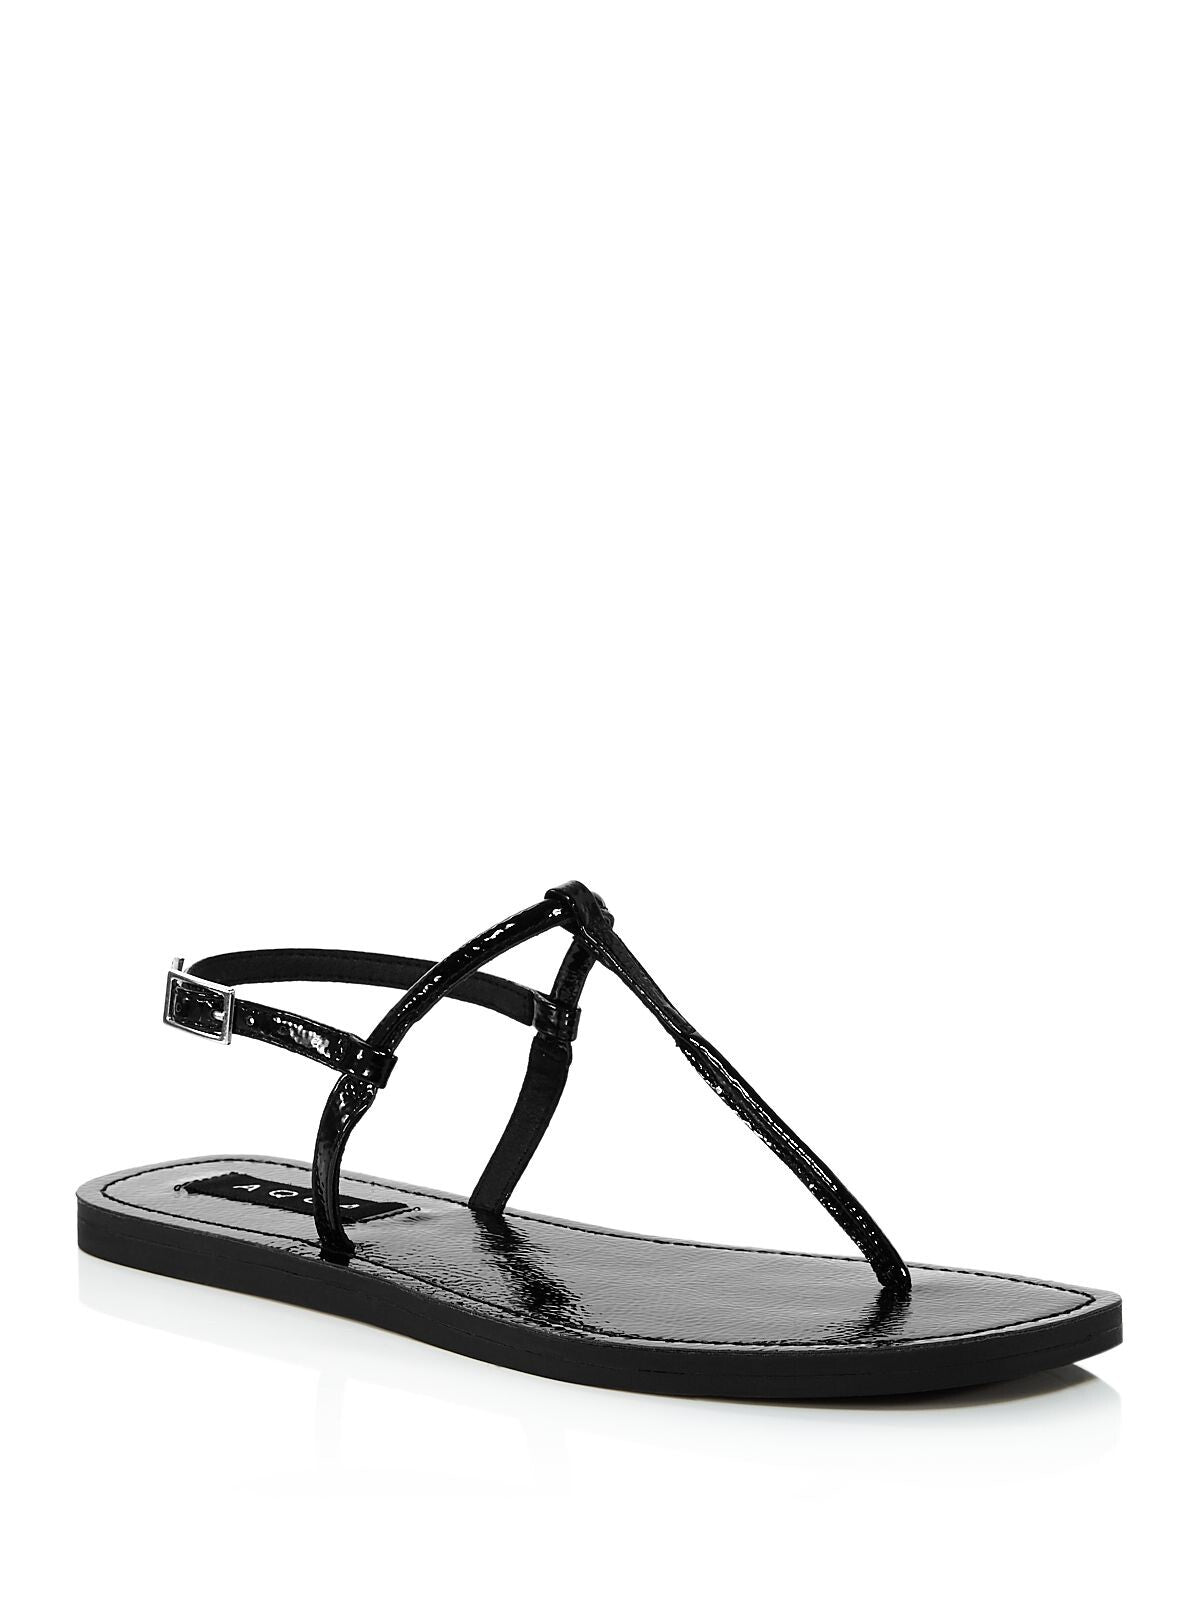 AQUA Womens Black T-Strap Zen Round Toe Buckle Thong Sandals Shoes 7.5 M